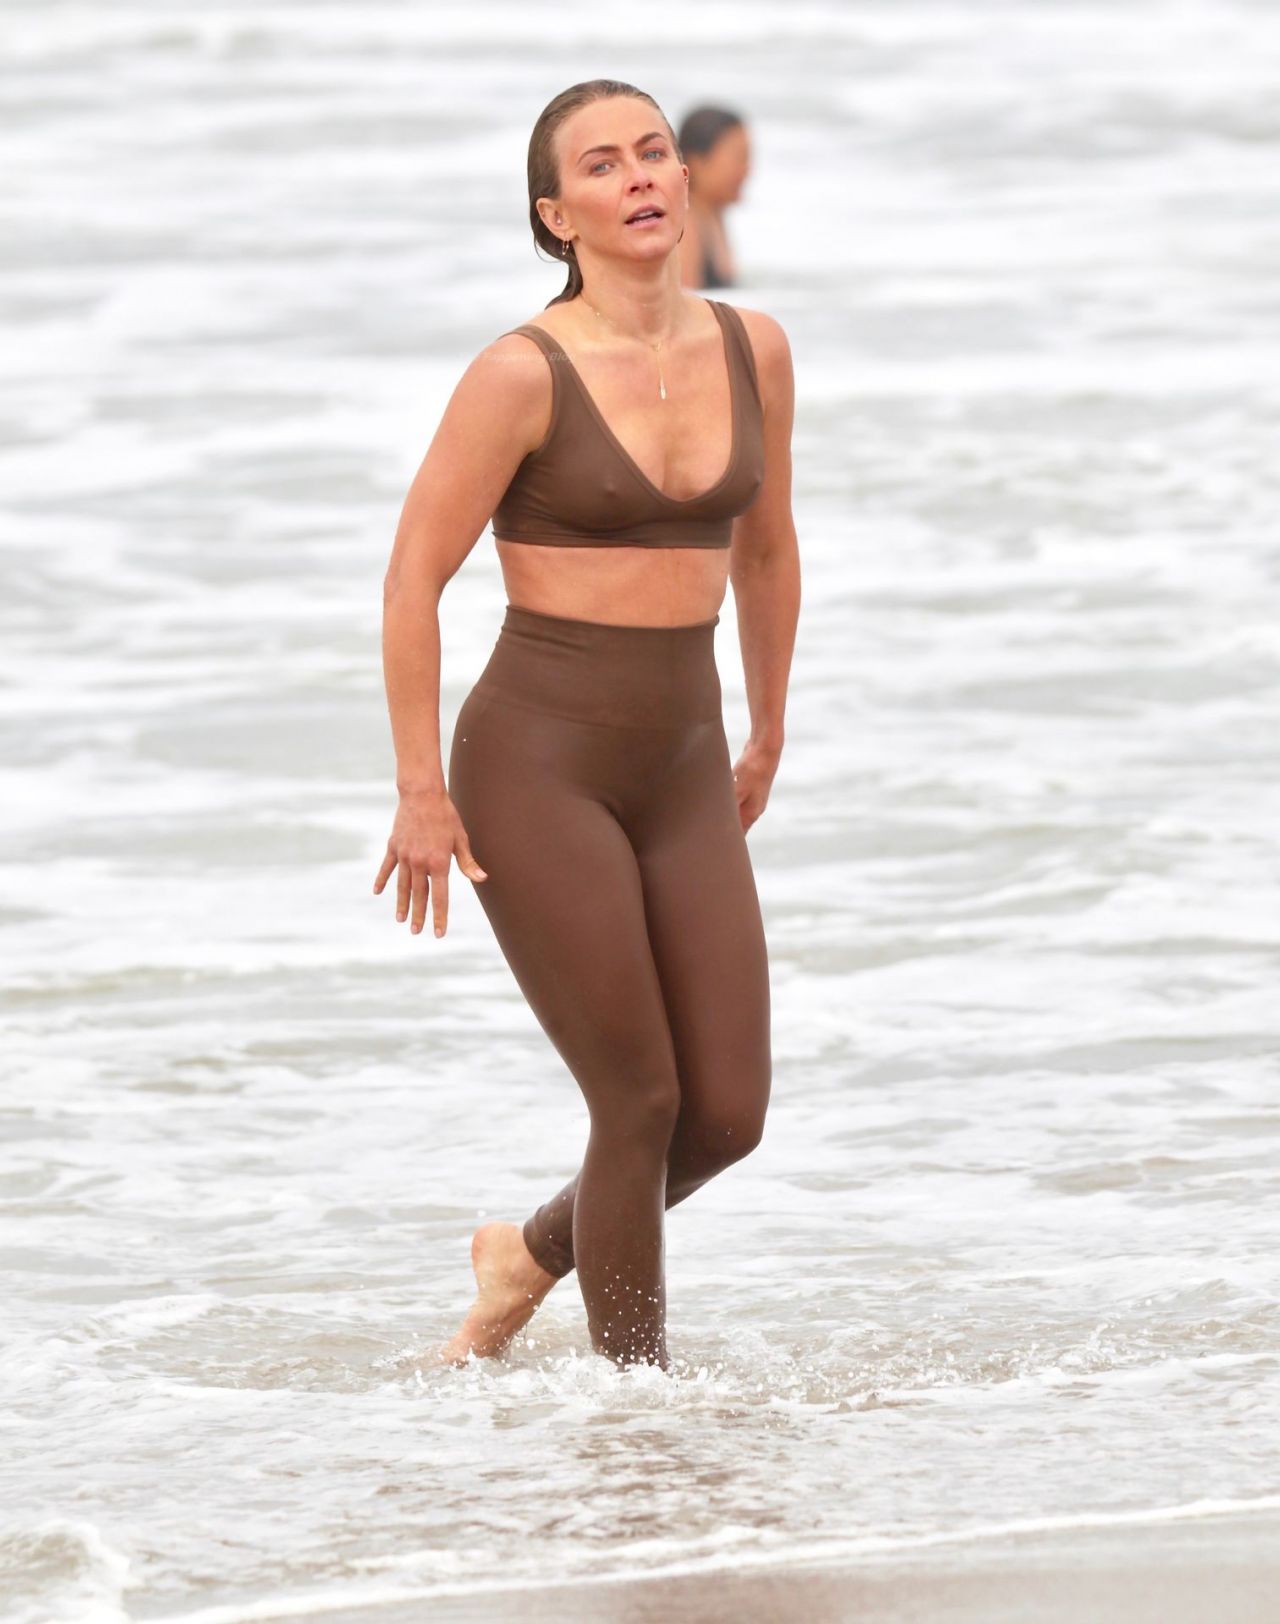 Julianne Hough in Sports Bra And Leggings at Venice Beach 04/24/2021.